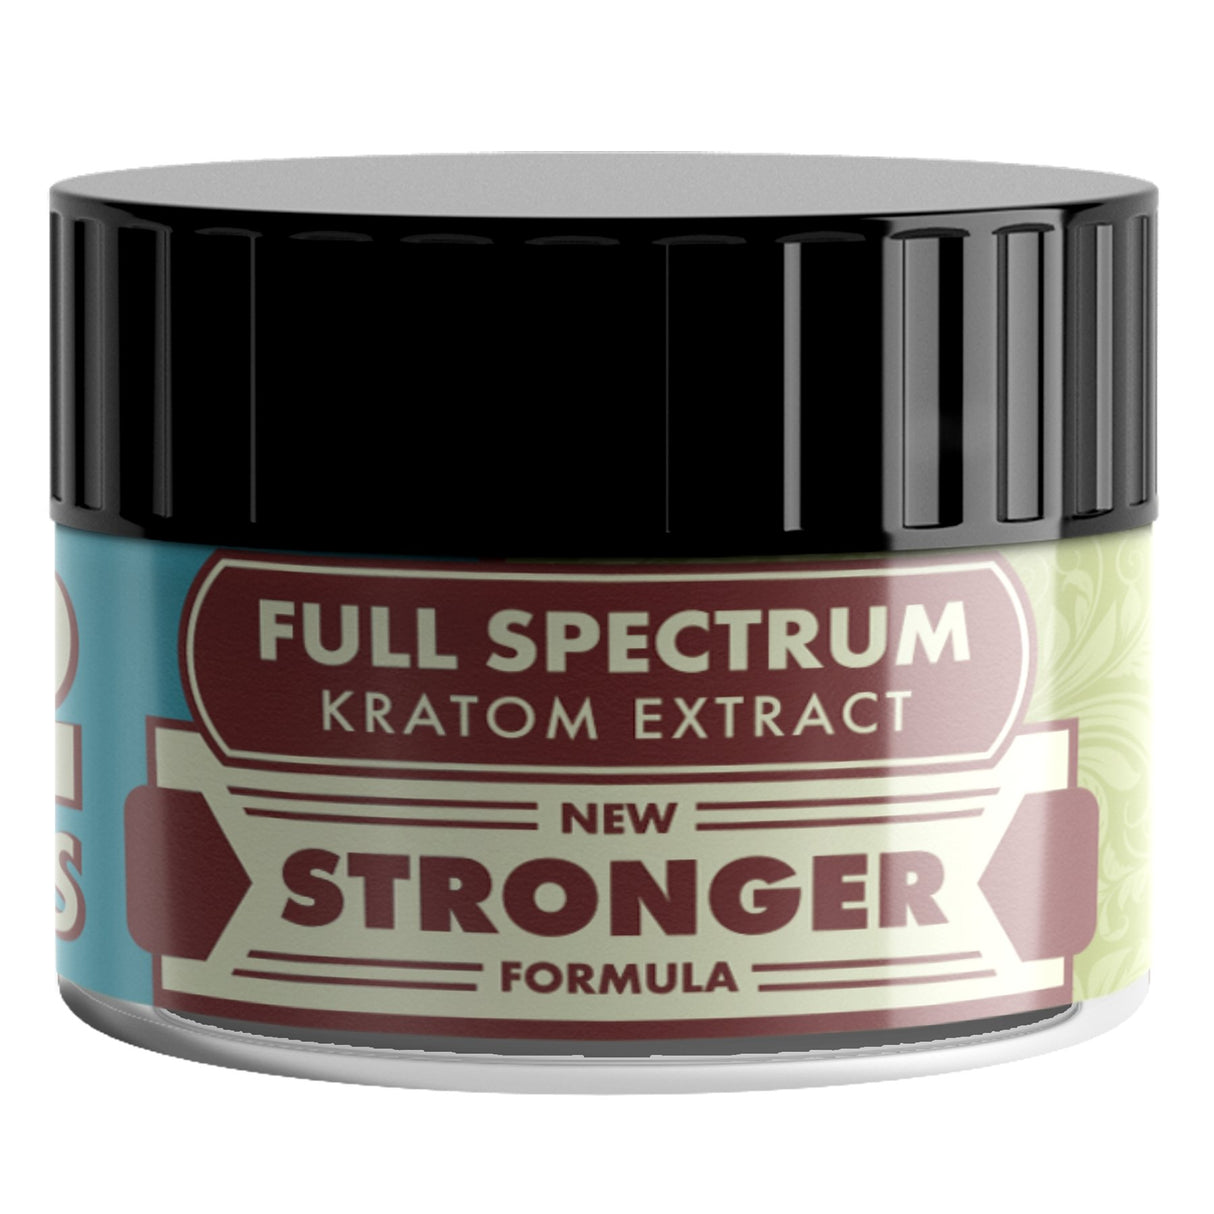 Full Spectrum Kratom Extract Capsule - 2 Count